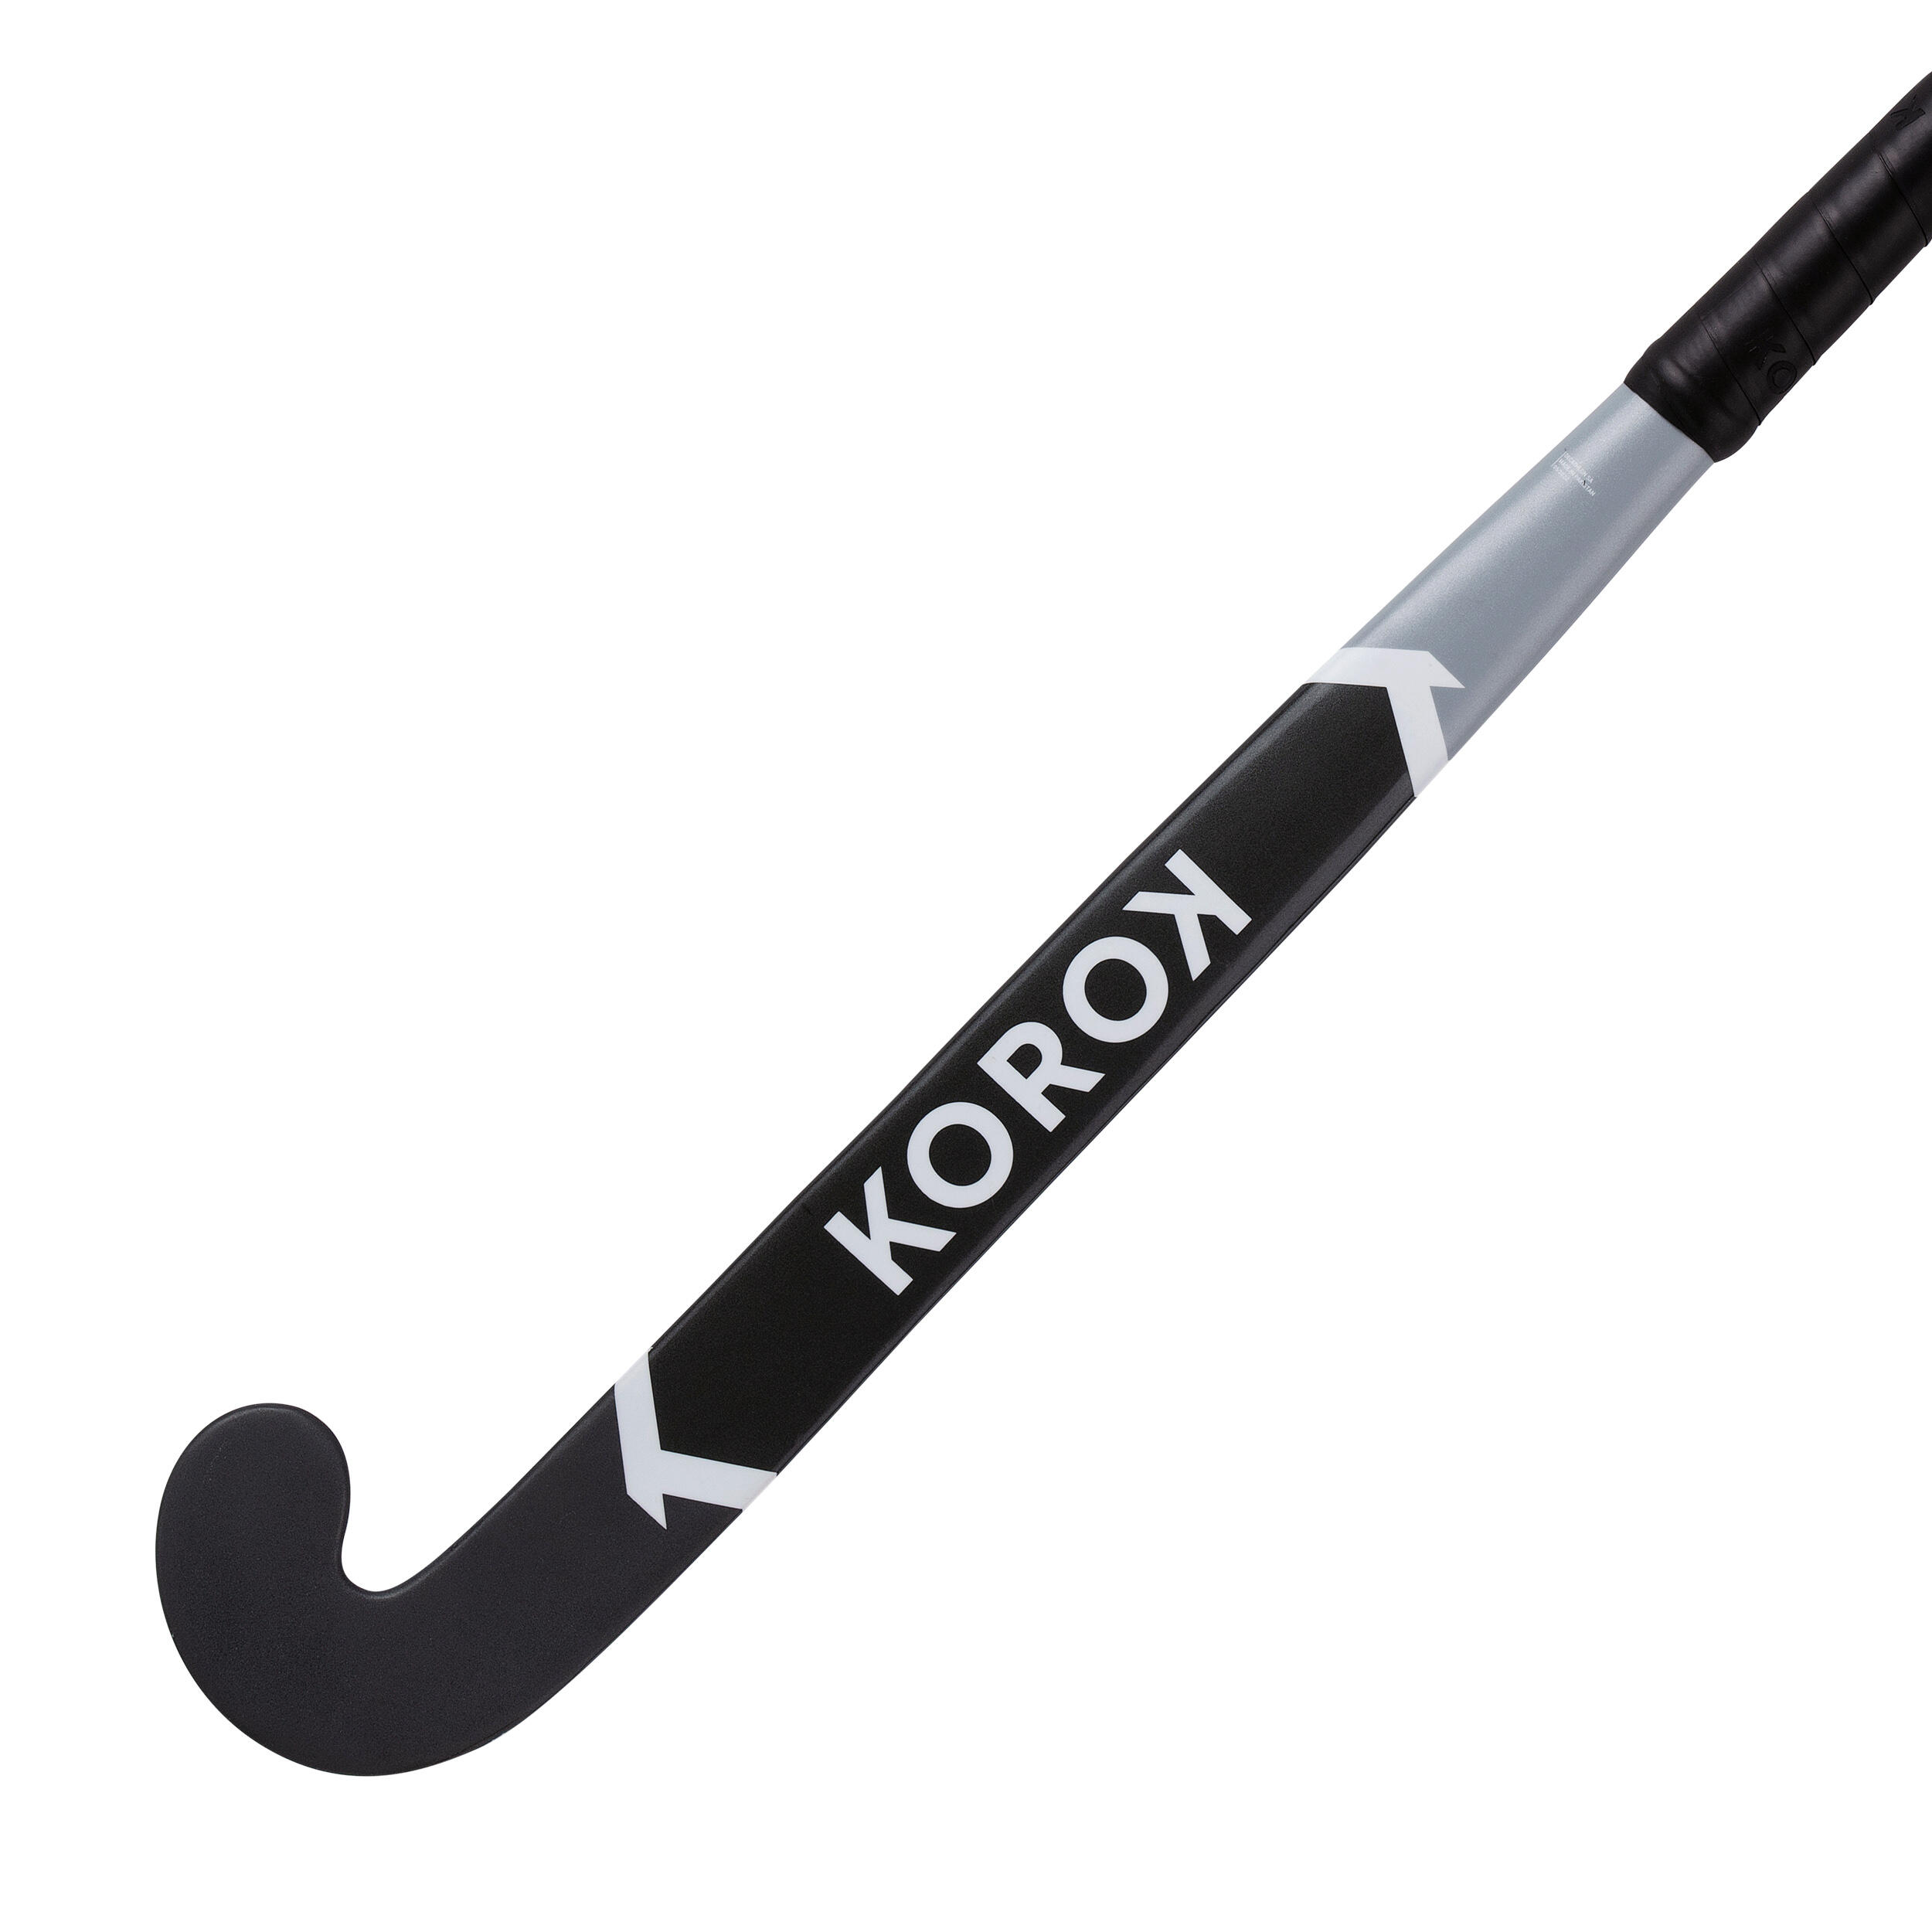 Adult Beginner 100% Fibreglass Mid Bow Indoor Field Hockey Stick FH500 - Grey 3/8